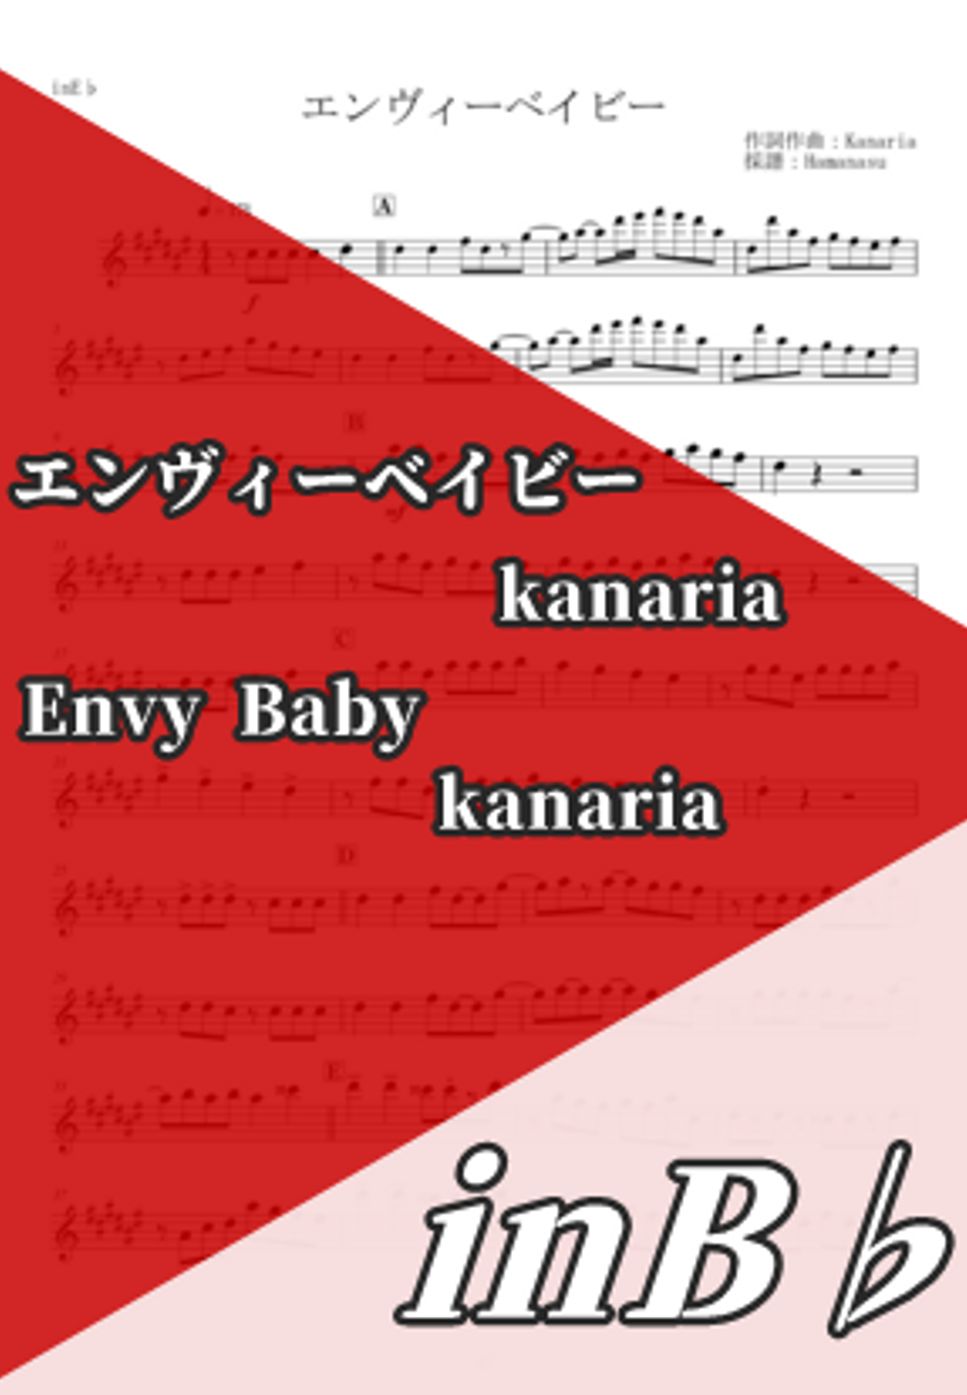 Kanaria - エンヴィーベイビー (inB♭) by はまなす